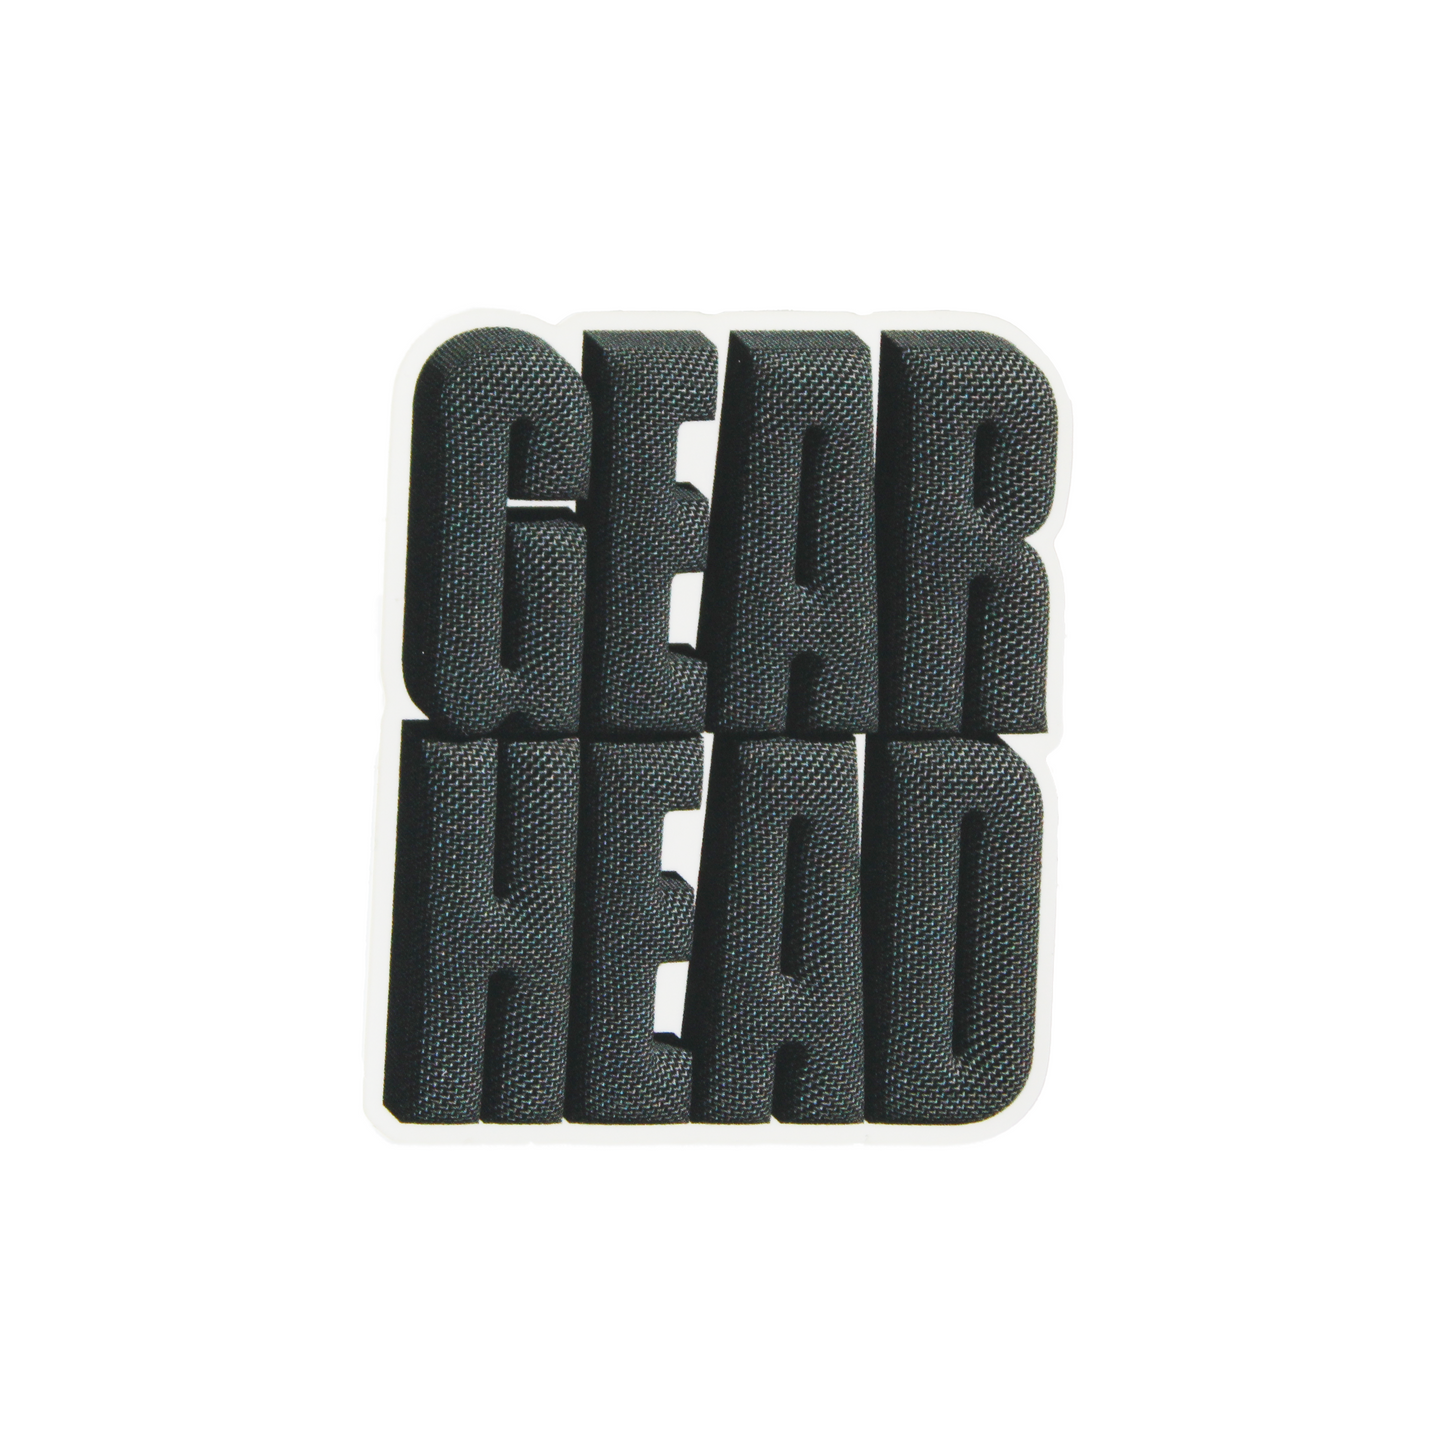 Gear Head Sticker Pack